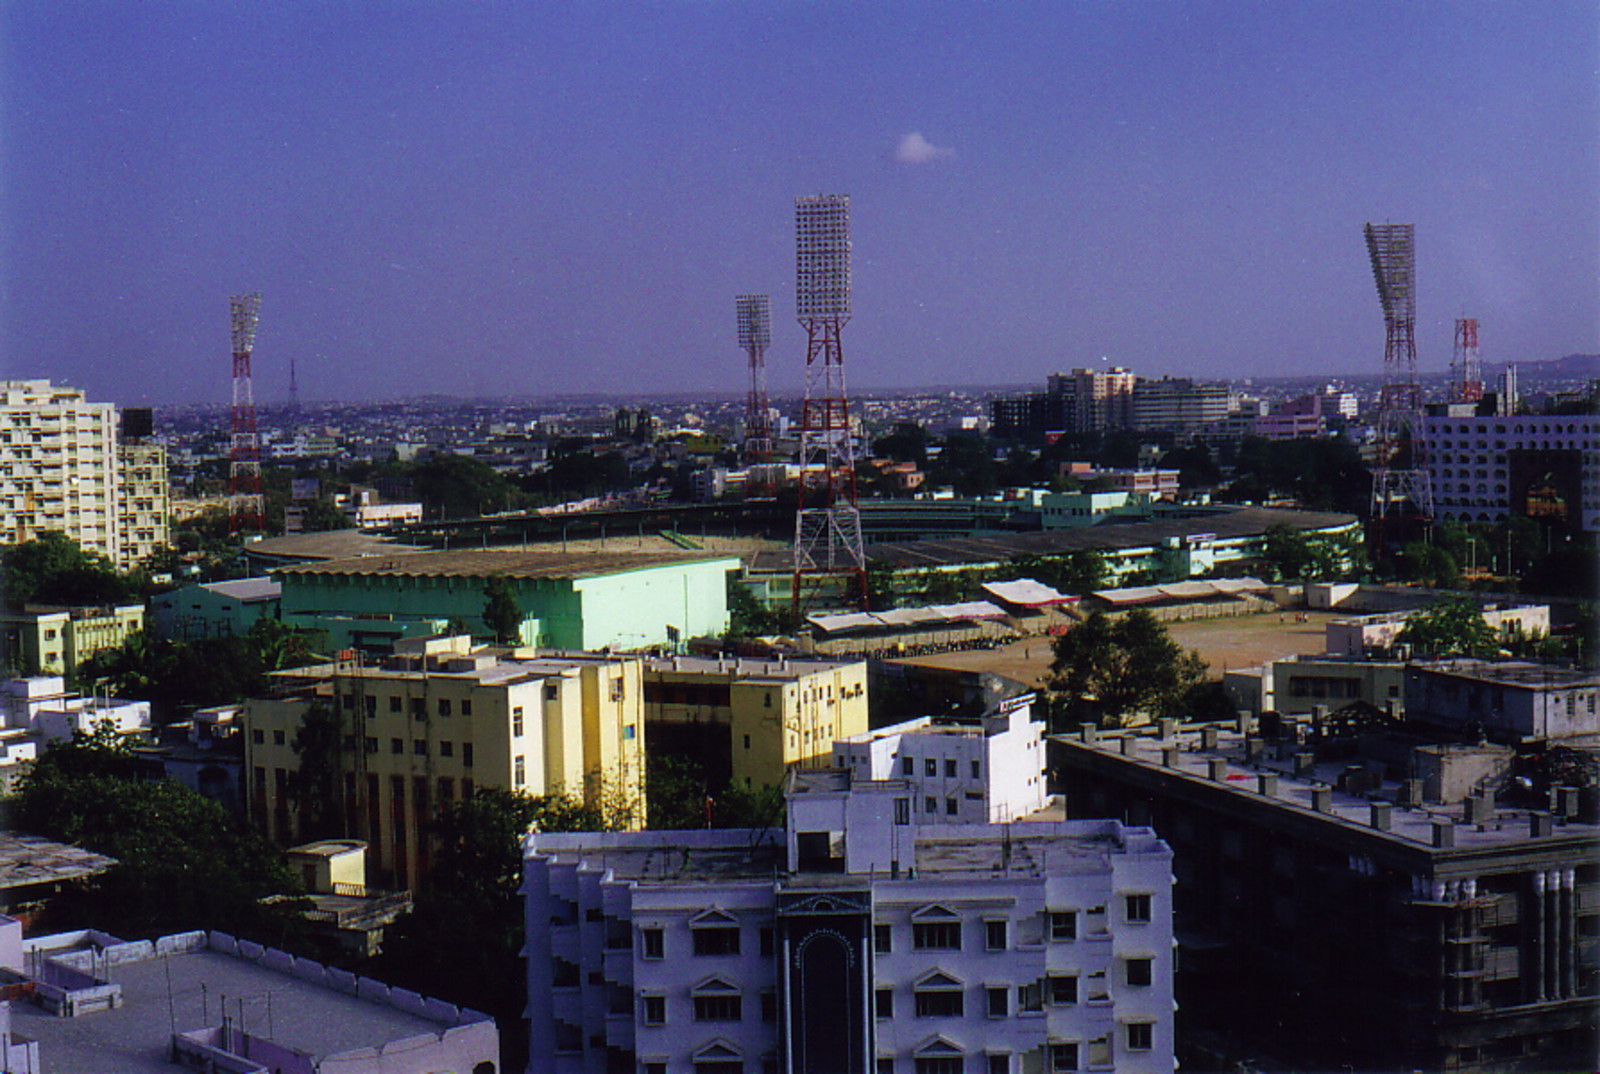 A stadium in Hyderabad